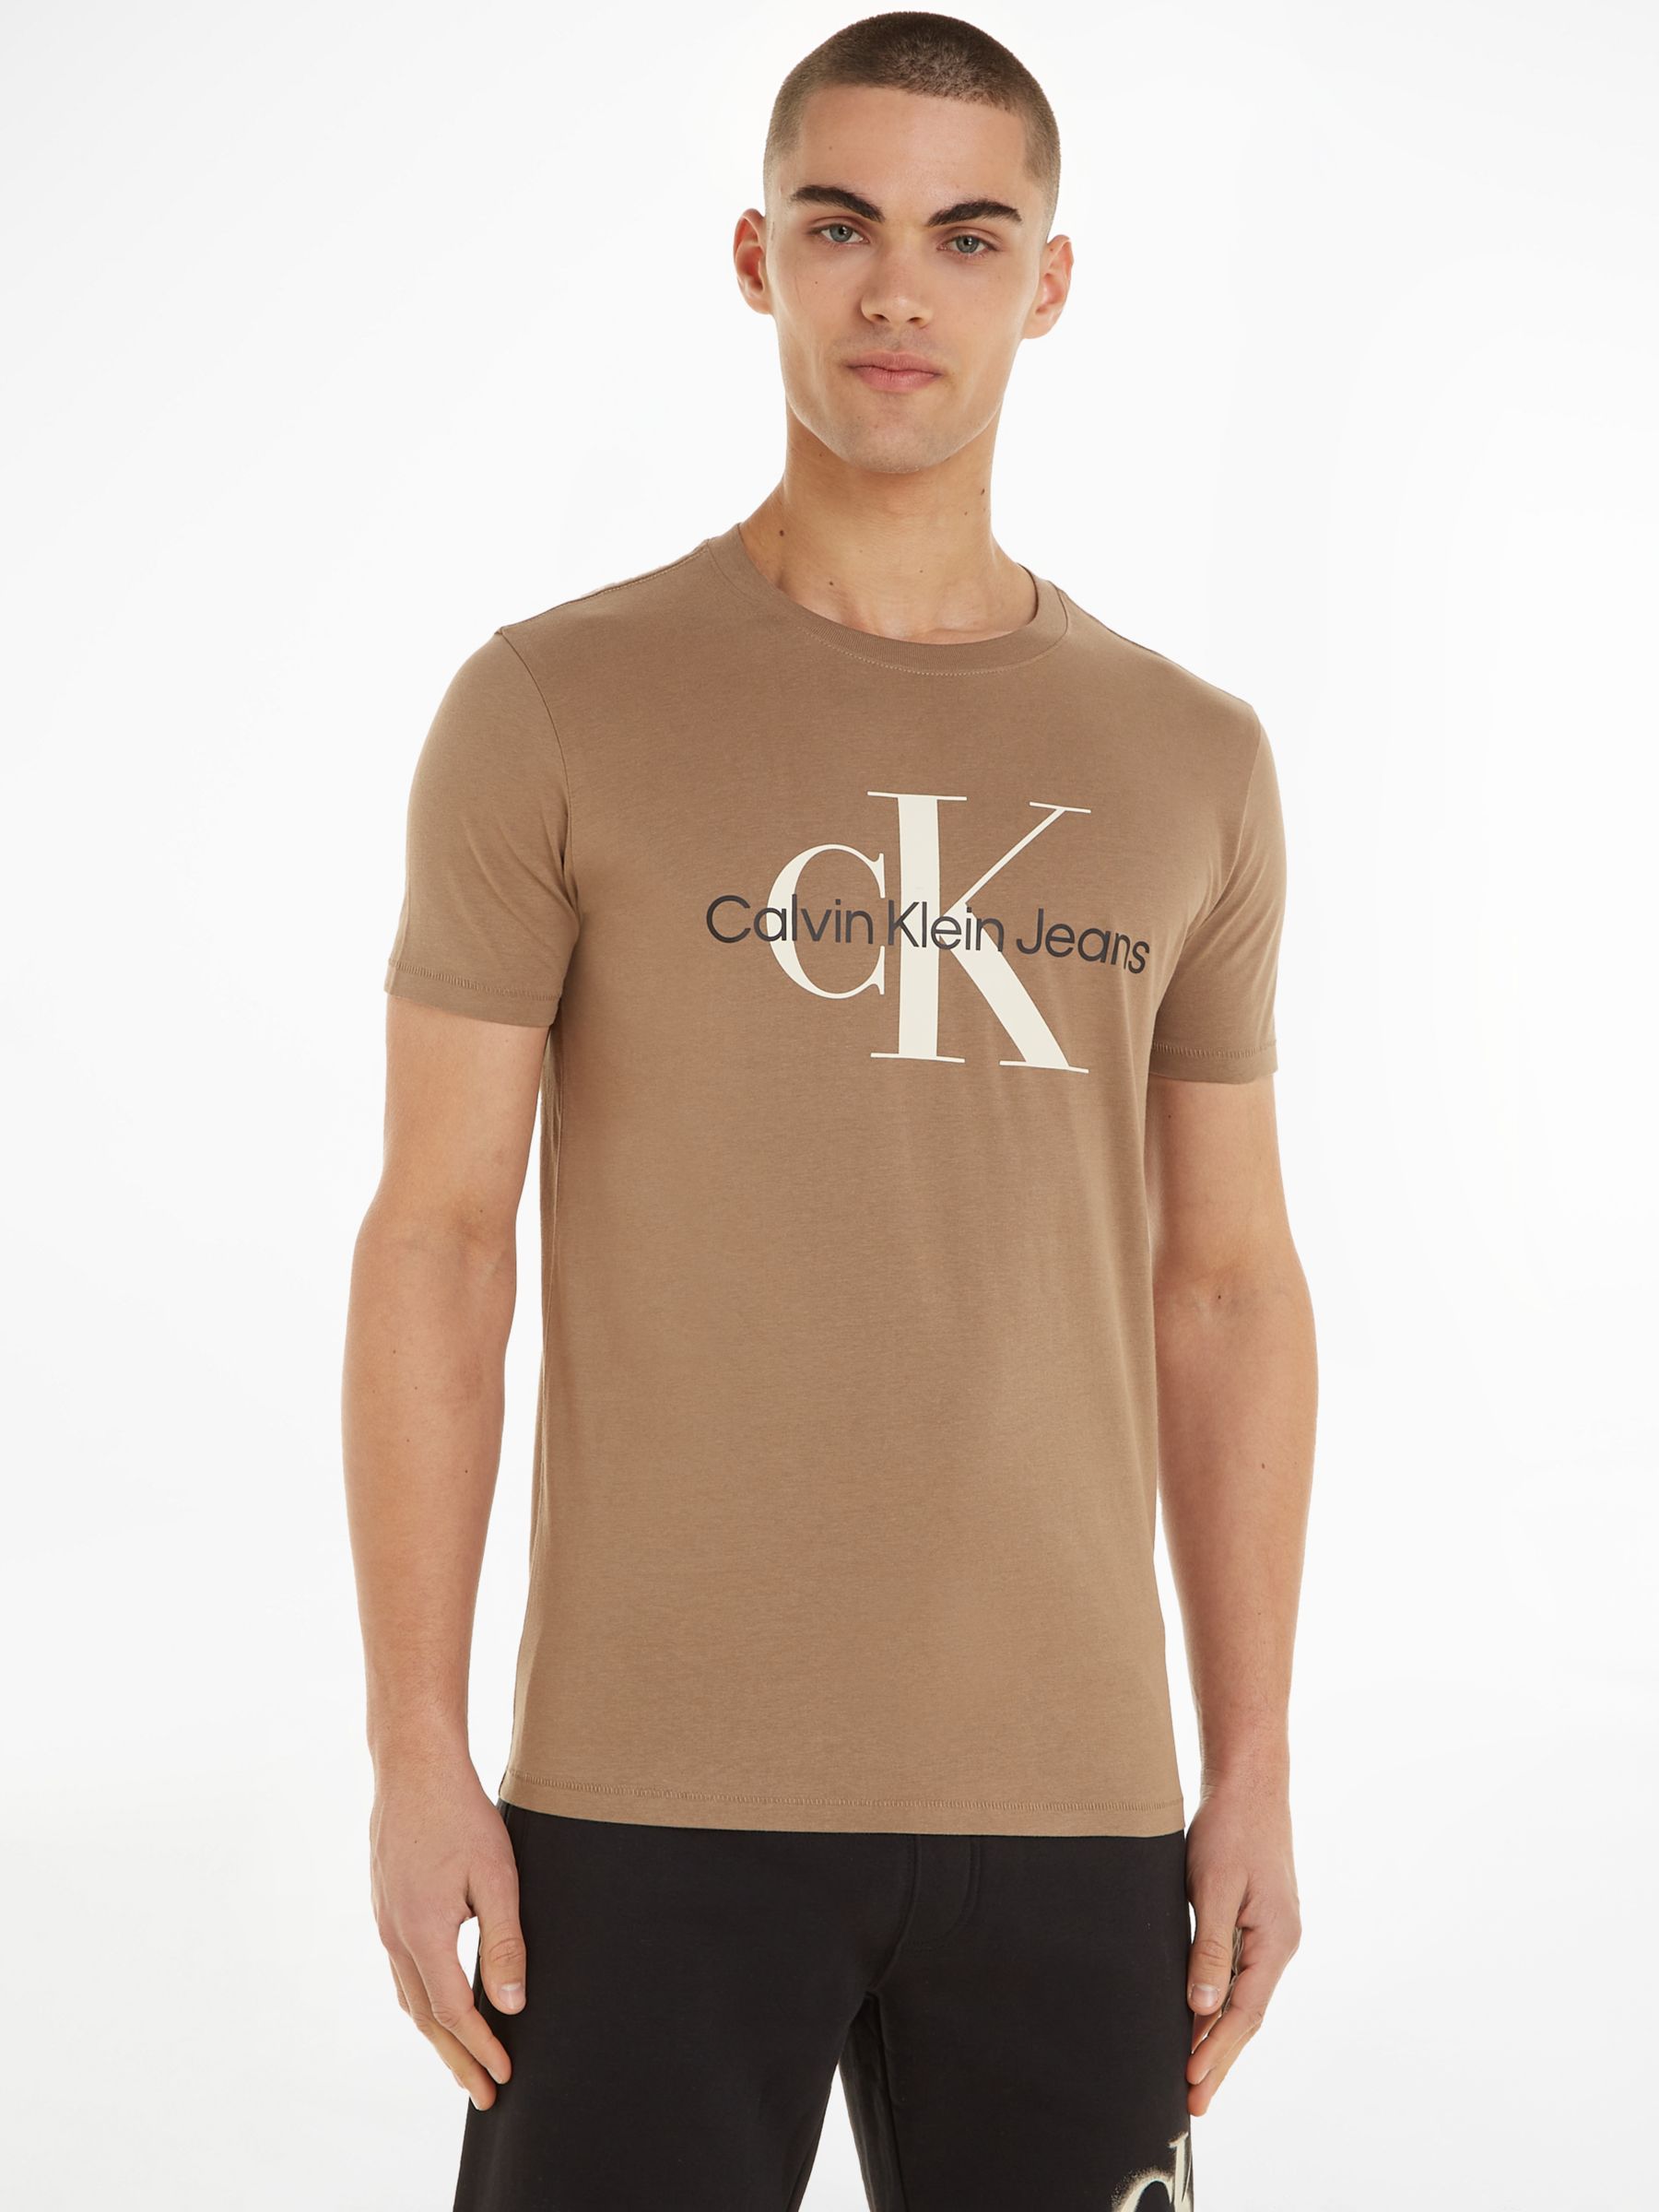 T-shirt Calvin Klein Modern Structure Lw S/S Crew Neck